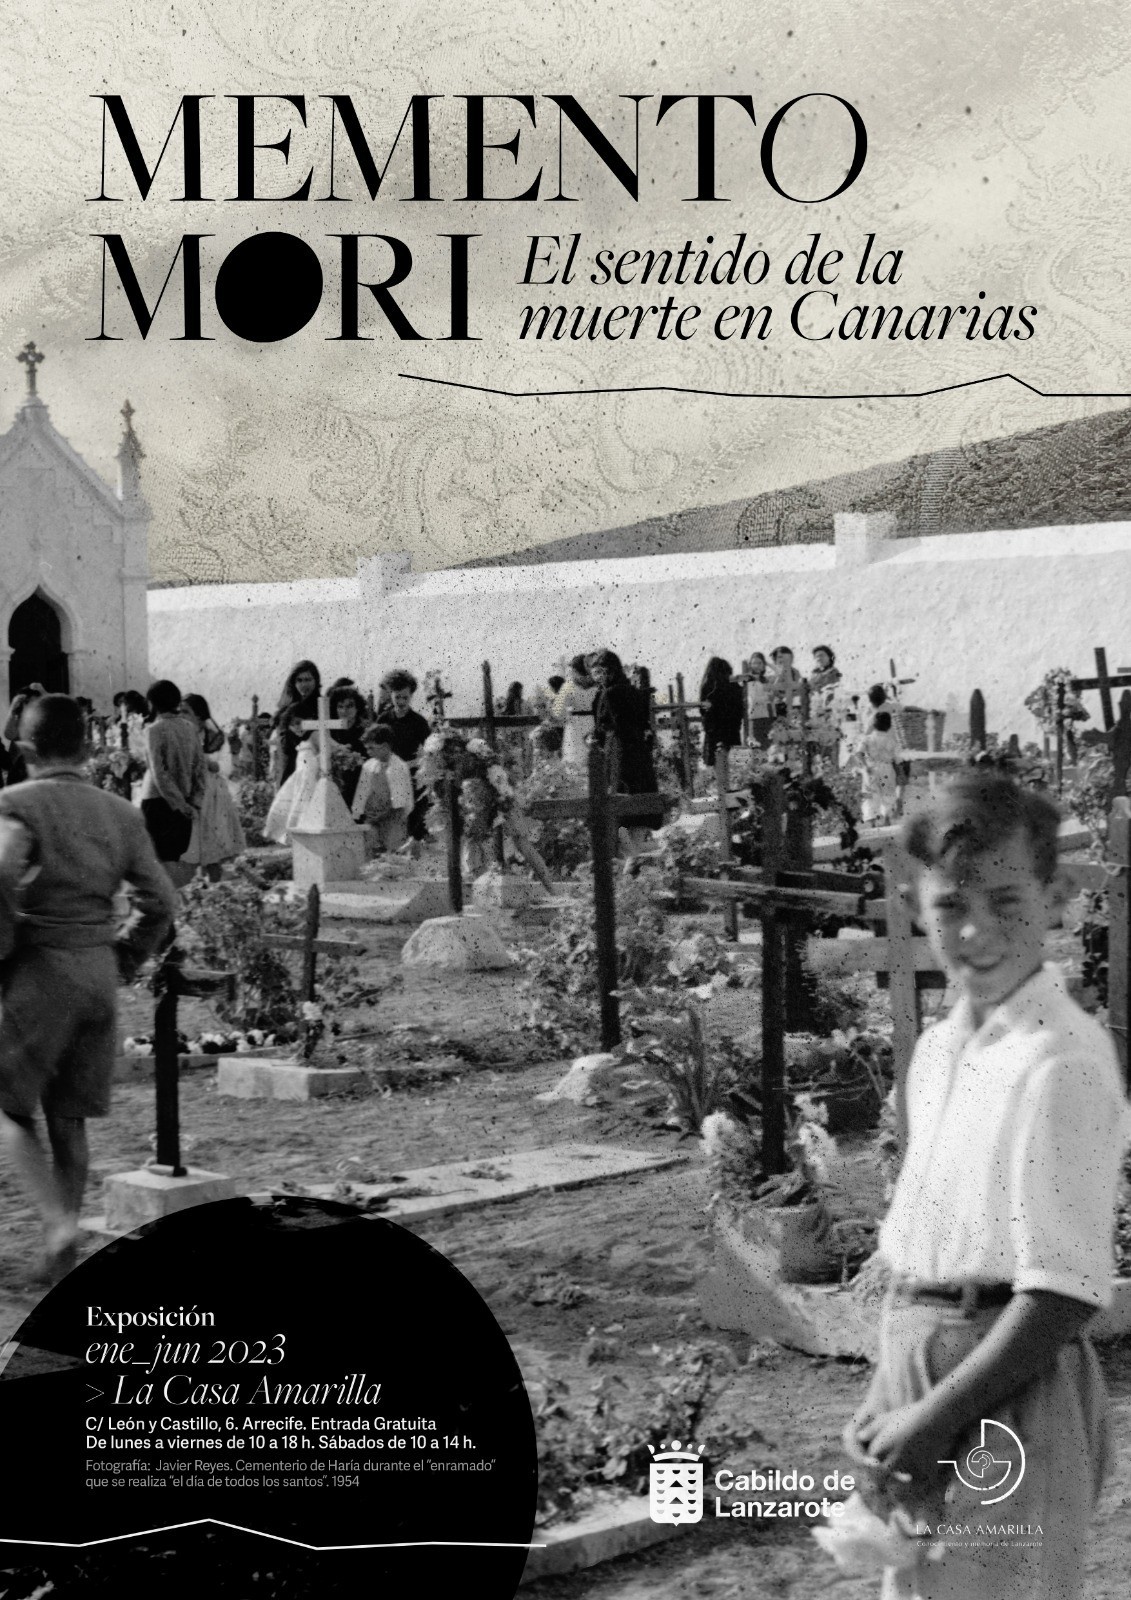 La Casa Amarilla acoge “Memento Mori”, una exposición sobre el sentido de la muerte en Canarias